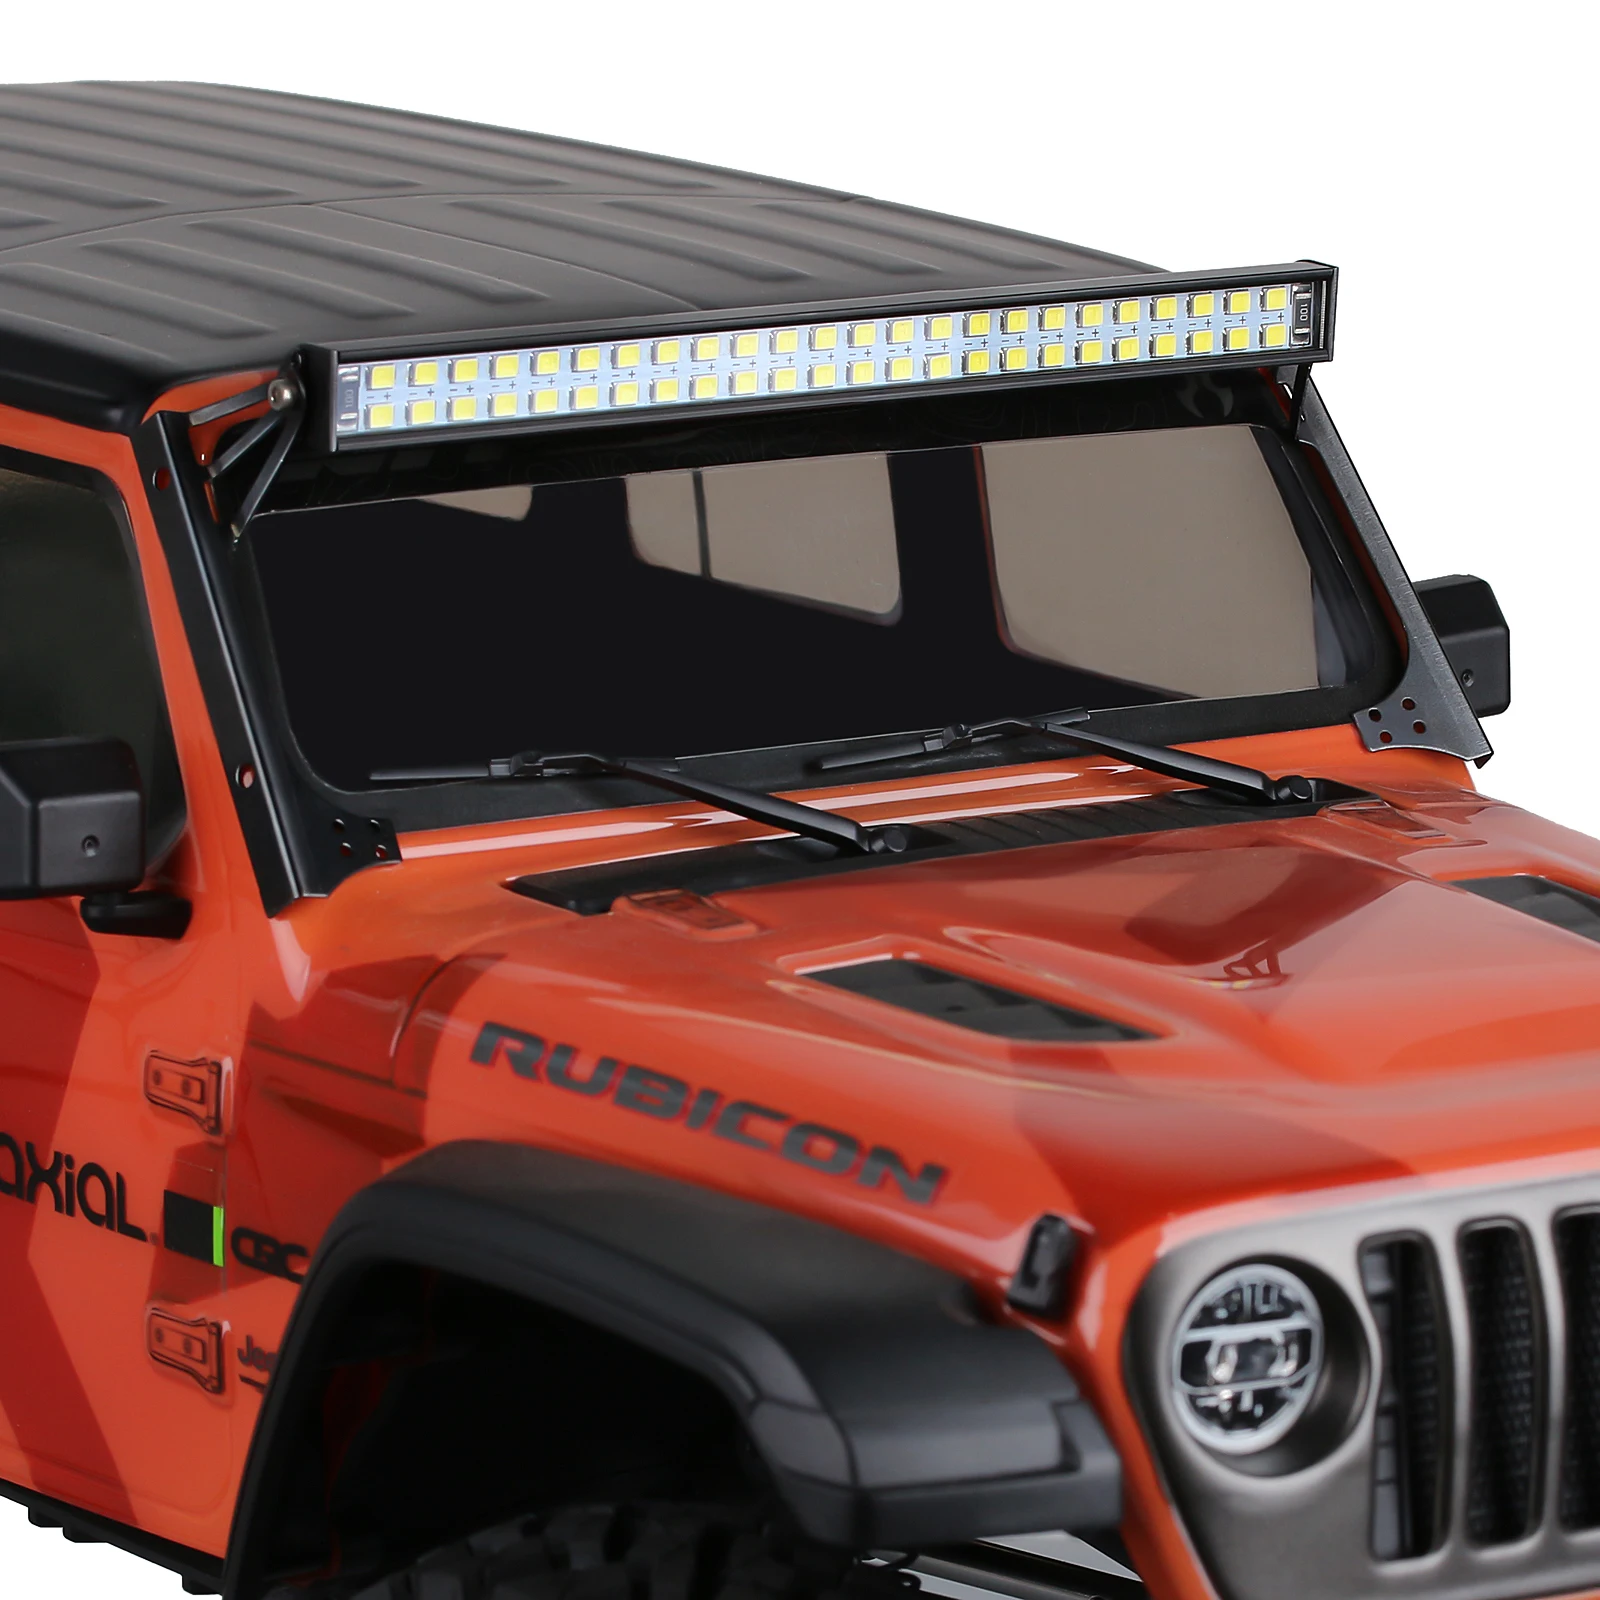 Panel de luz LED de piezas, barra de Control para 1/10 RC Crawler Axial 90046 SCX10 III AXI03007 Jeep Wrangler, 1 unidad